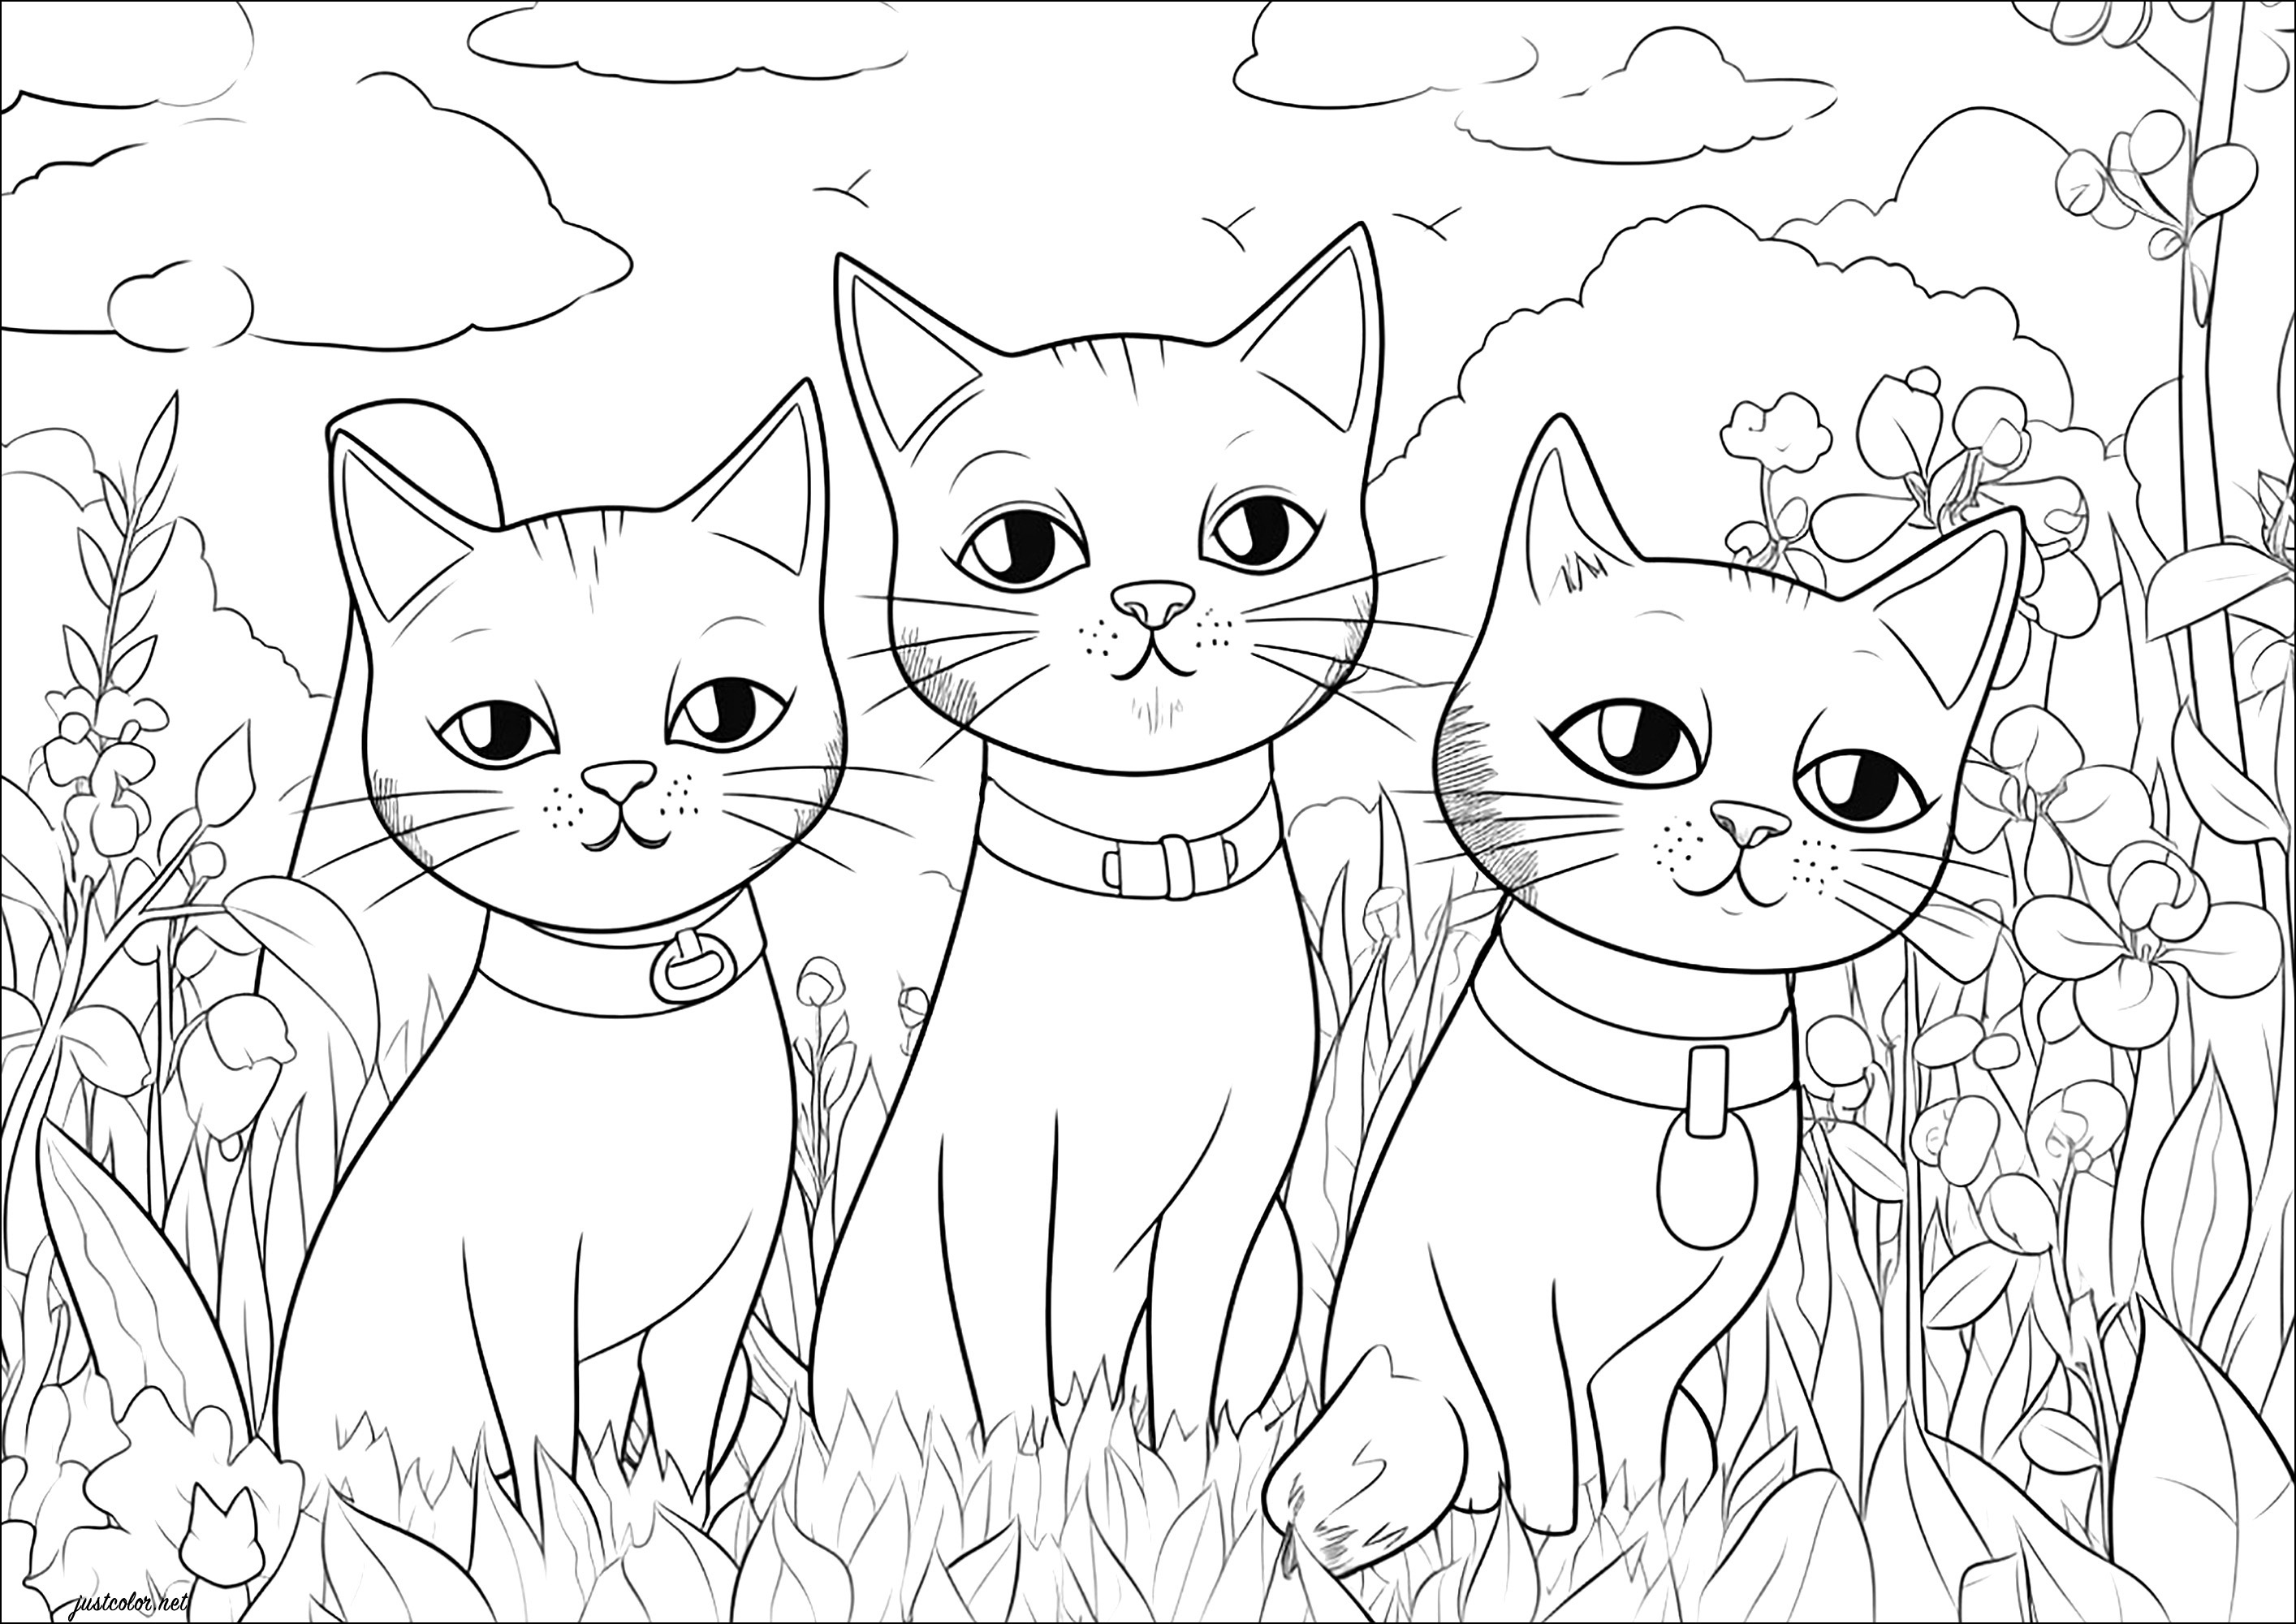 Trois chats qui vous toisent. Trois jolis chats à l'allure dédaigneuse, avec nombreux éléments végétaux à colorier en arrière-plan